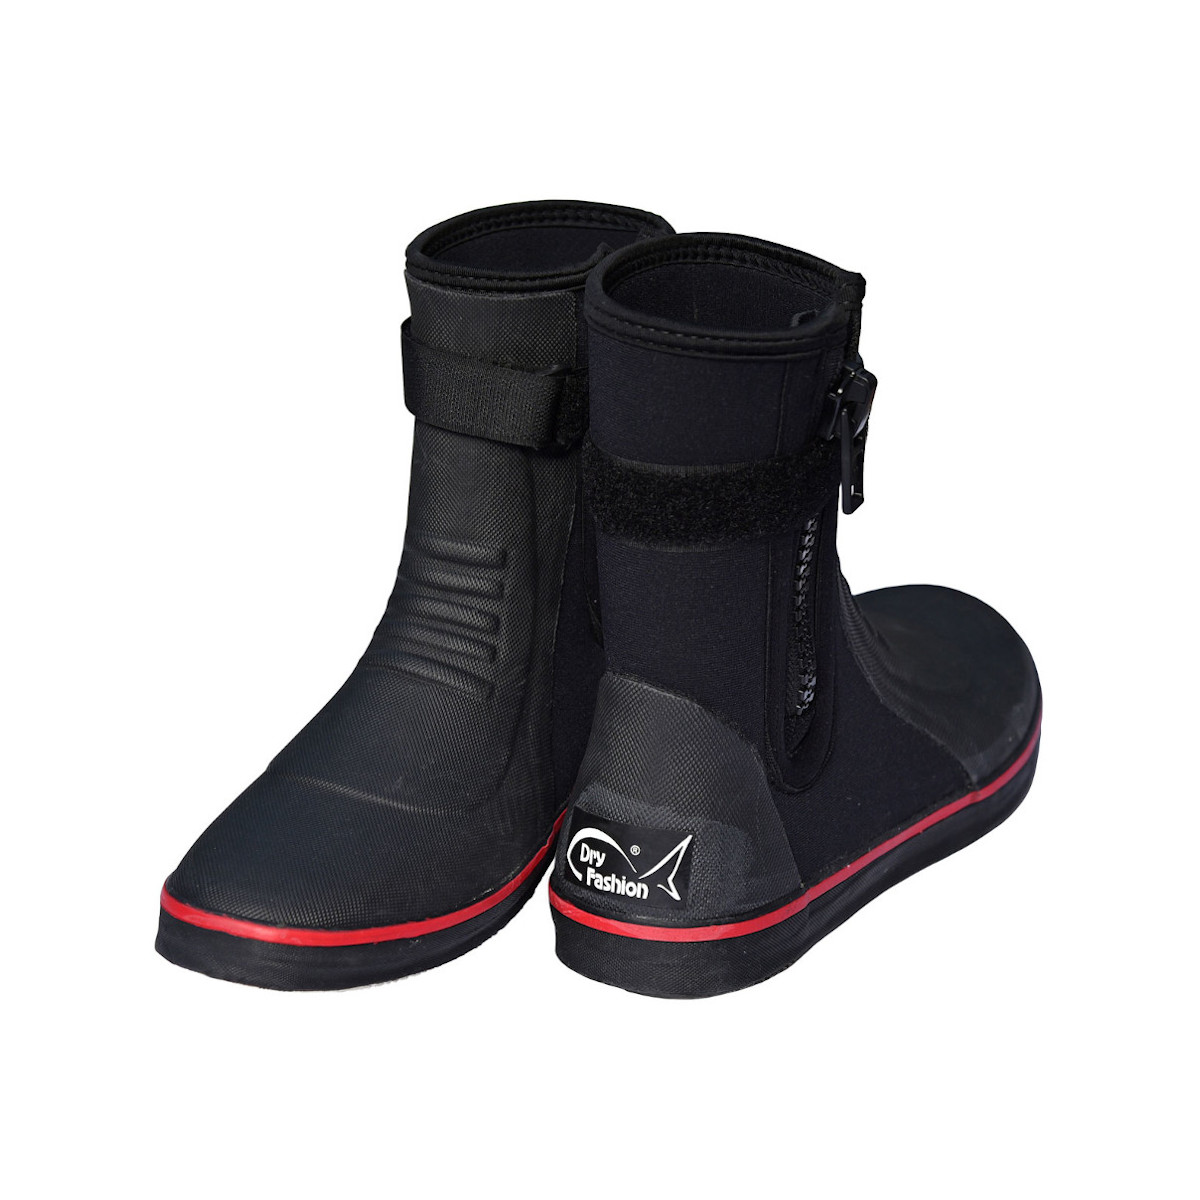 Dry Fashion Pro bottes néoprène unisexes noir-rouge, taille 43/44